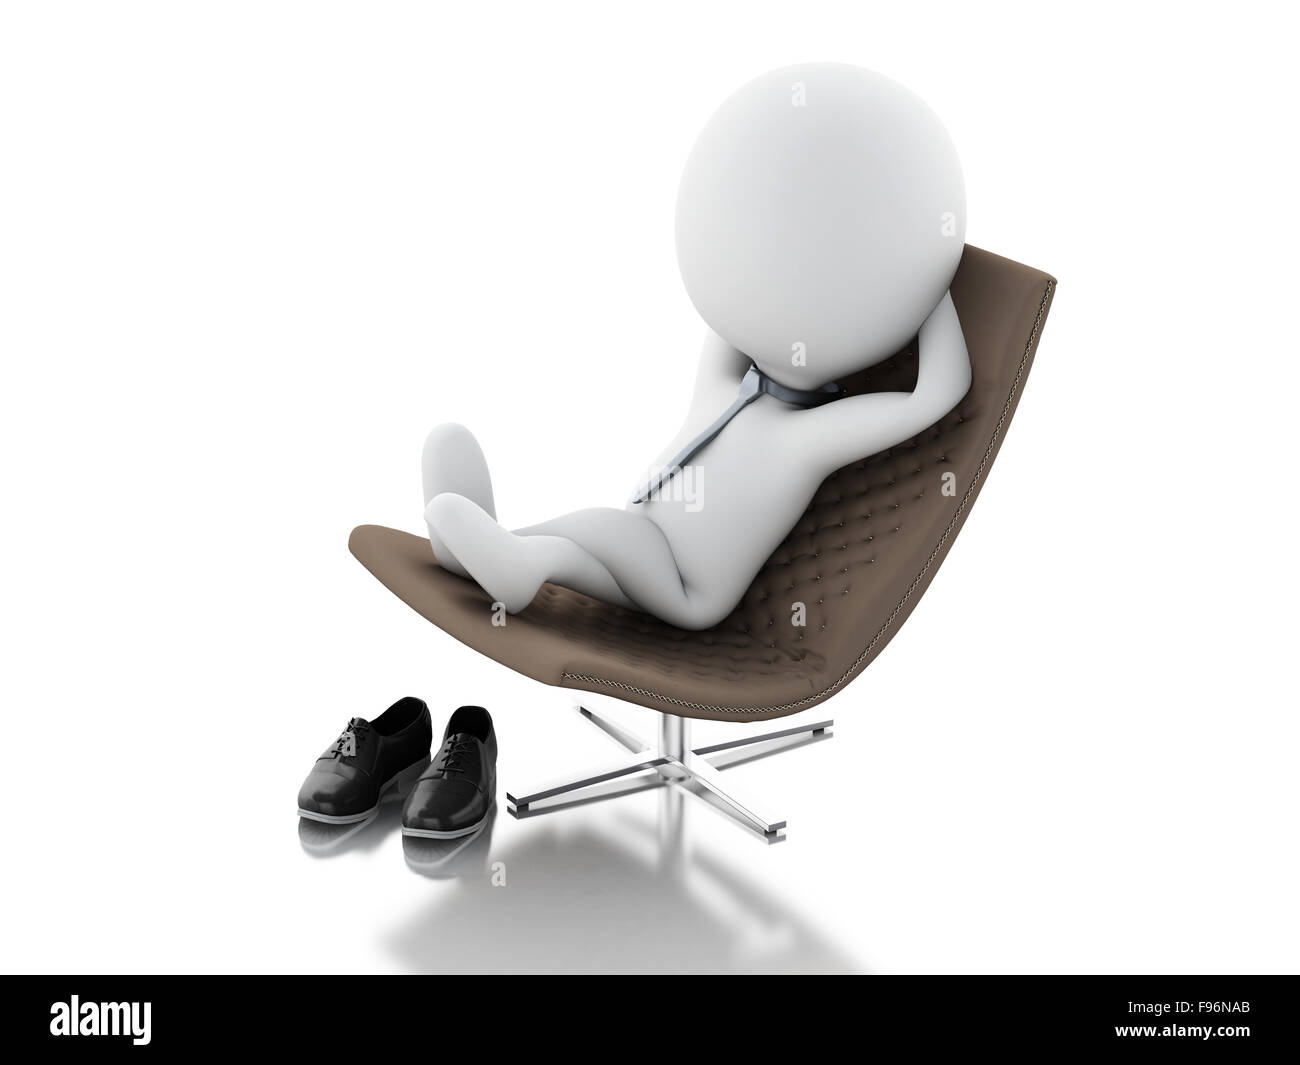 Moteur de rendu 3d illustration. Les gens d'affaires blanc vous détendre sur une chaise. Isolé sur fond blanc Banque D'Images